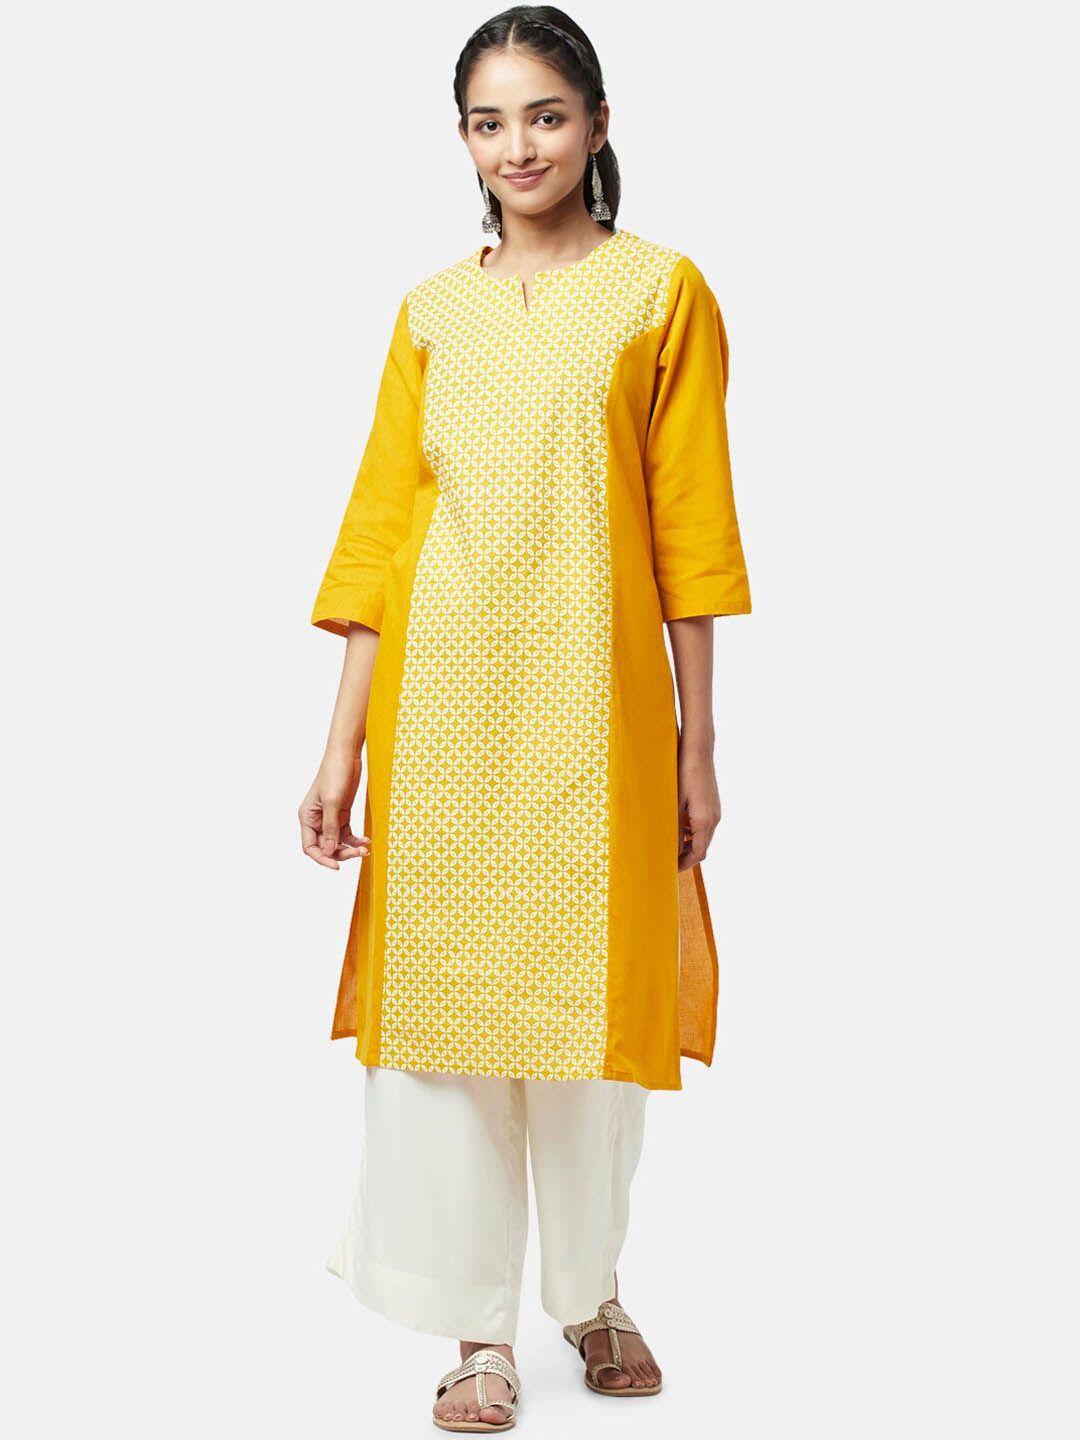 yu by pantaloons women ethnic motif printed kurta